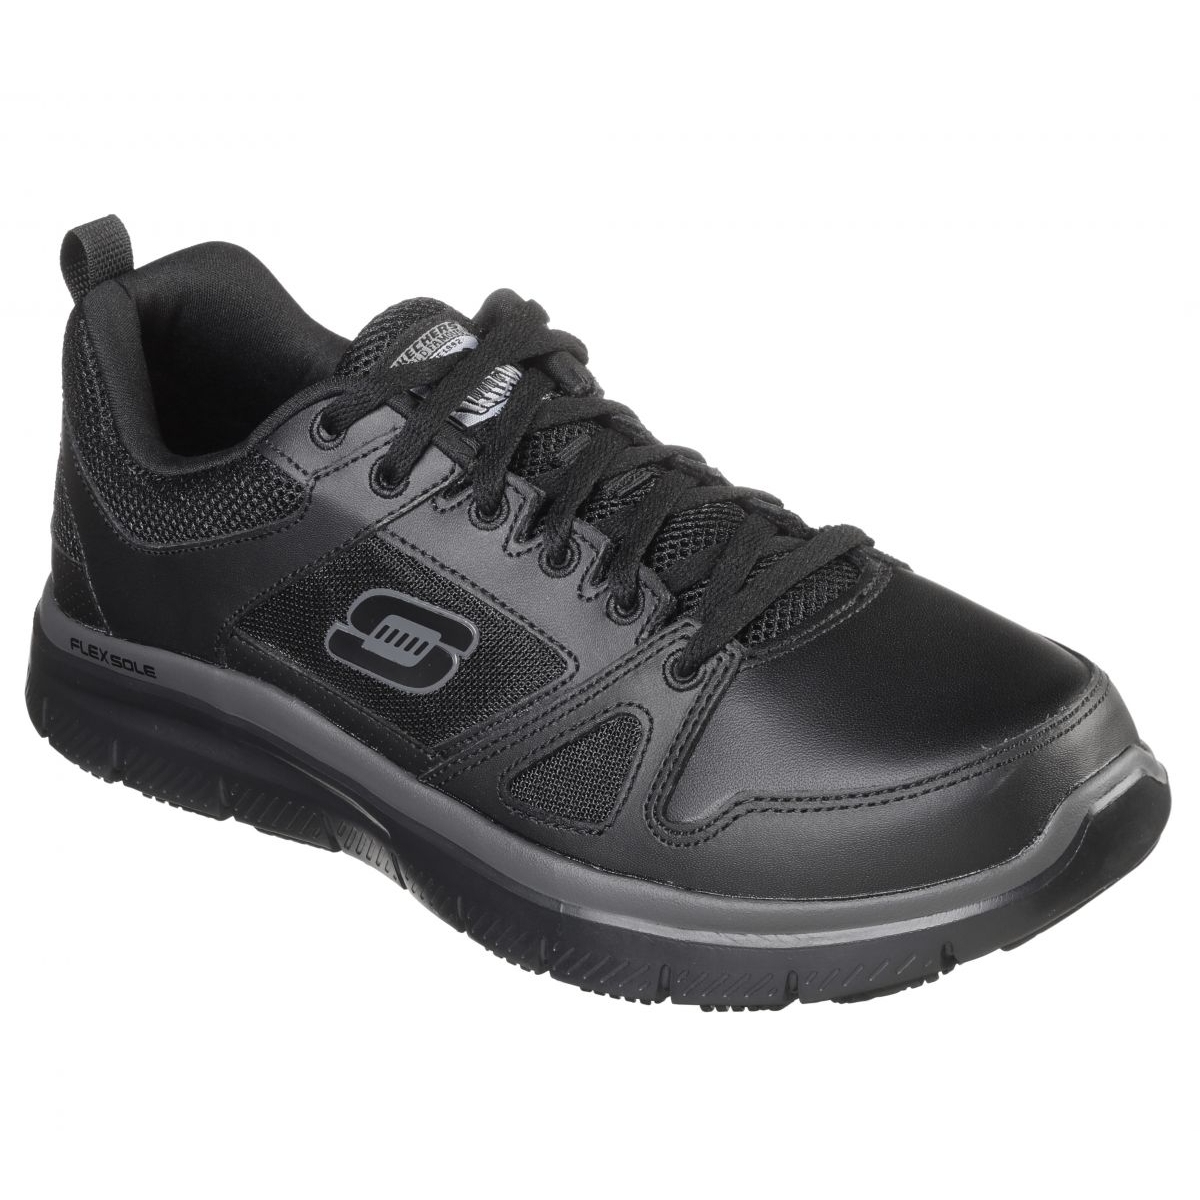 Skechers Men's Flex Advantage SR Work Shoes BLACK - BLACK, 11.5